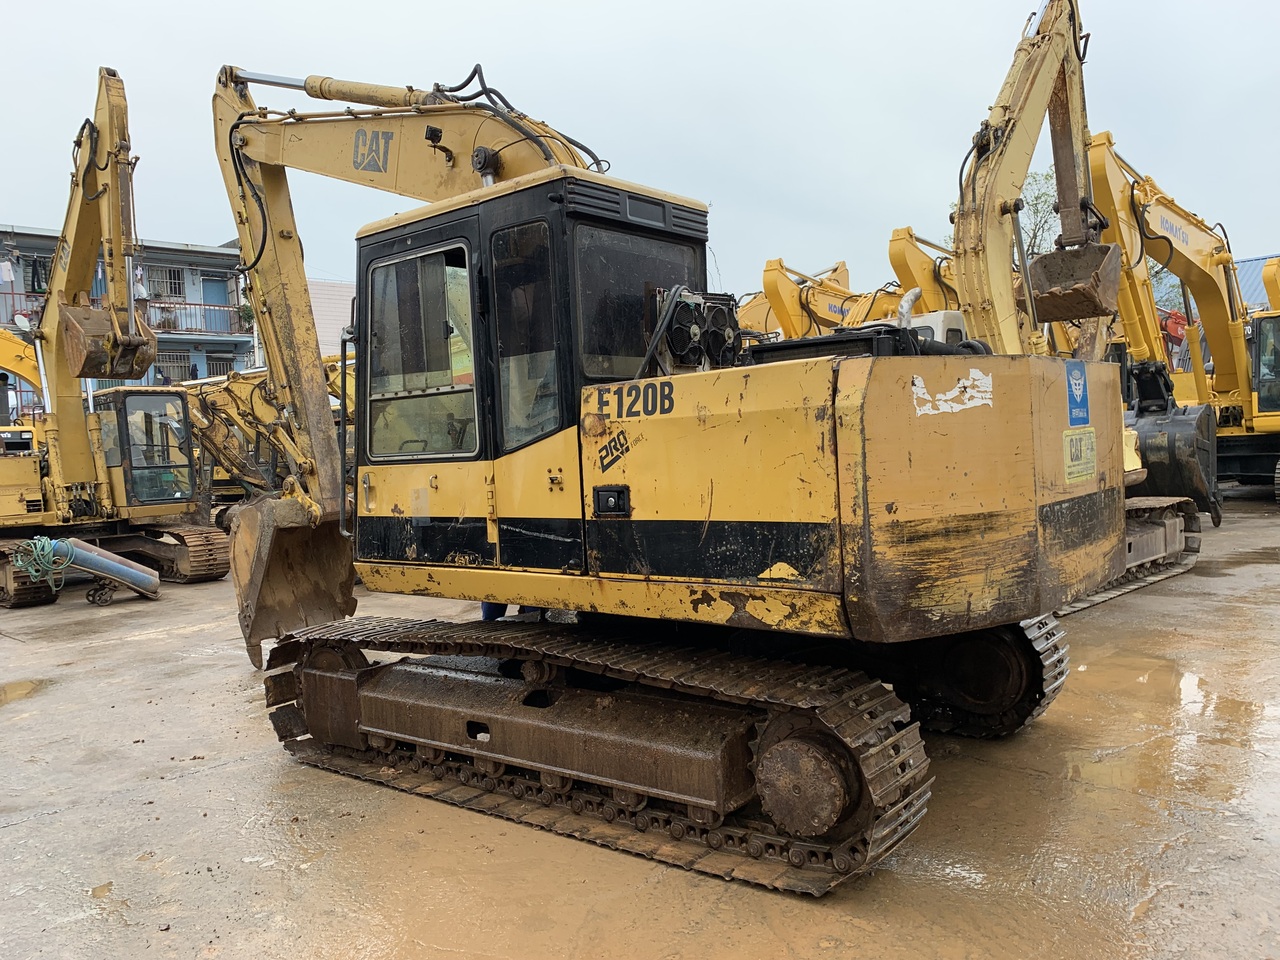 Ερπυστριοφόρος εκσκαφέας CATERPILLAR excavator semi auto excavator CAT E120B: φωτογραφία 3